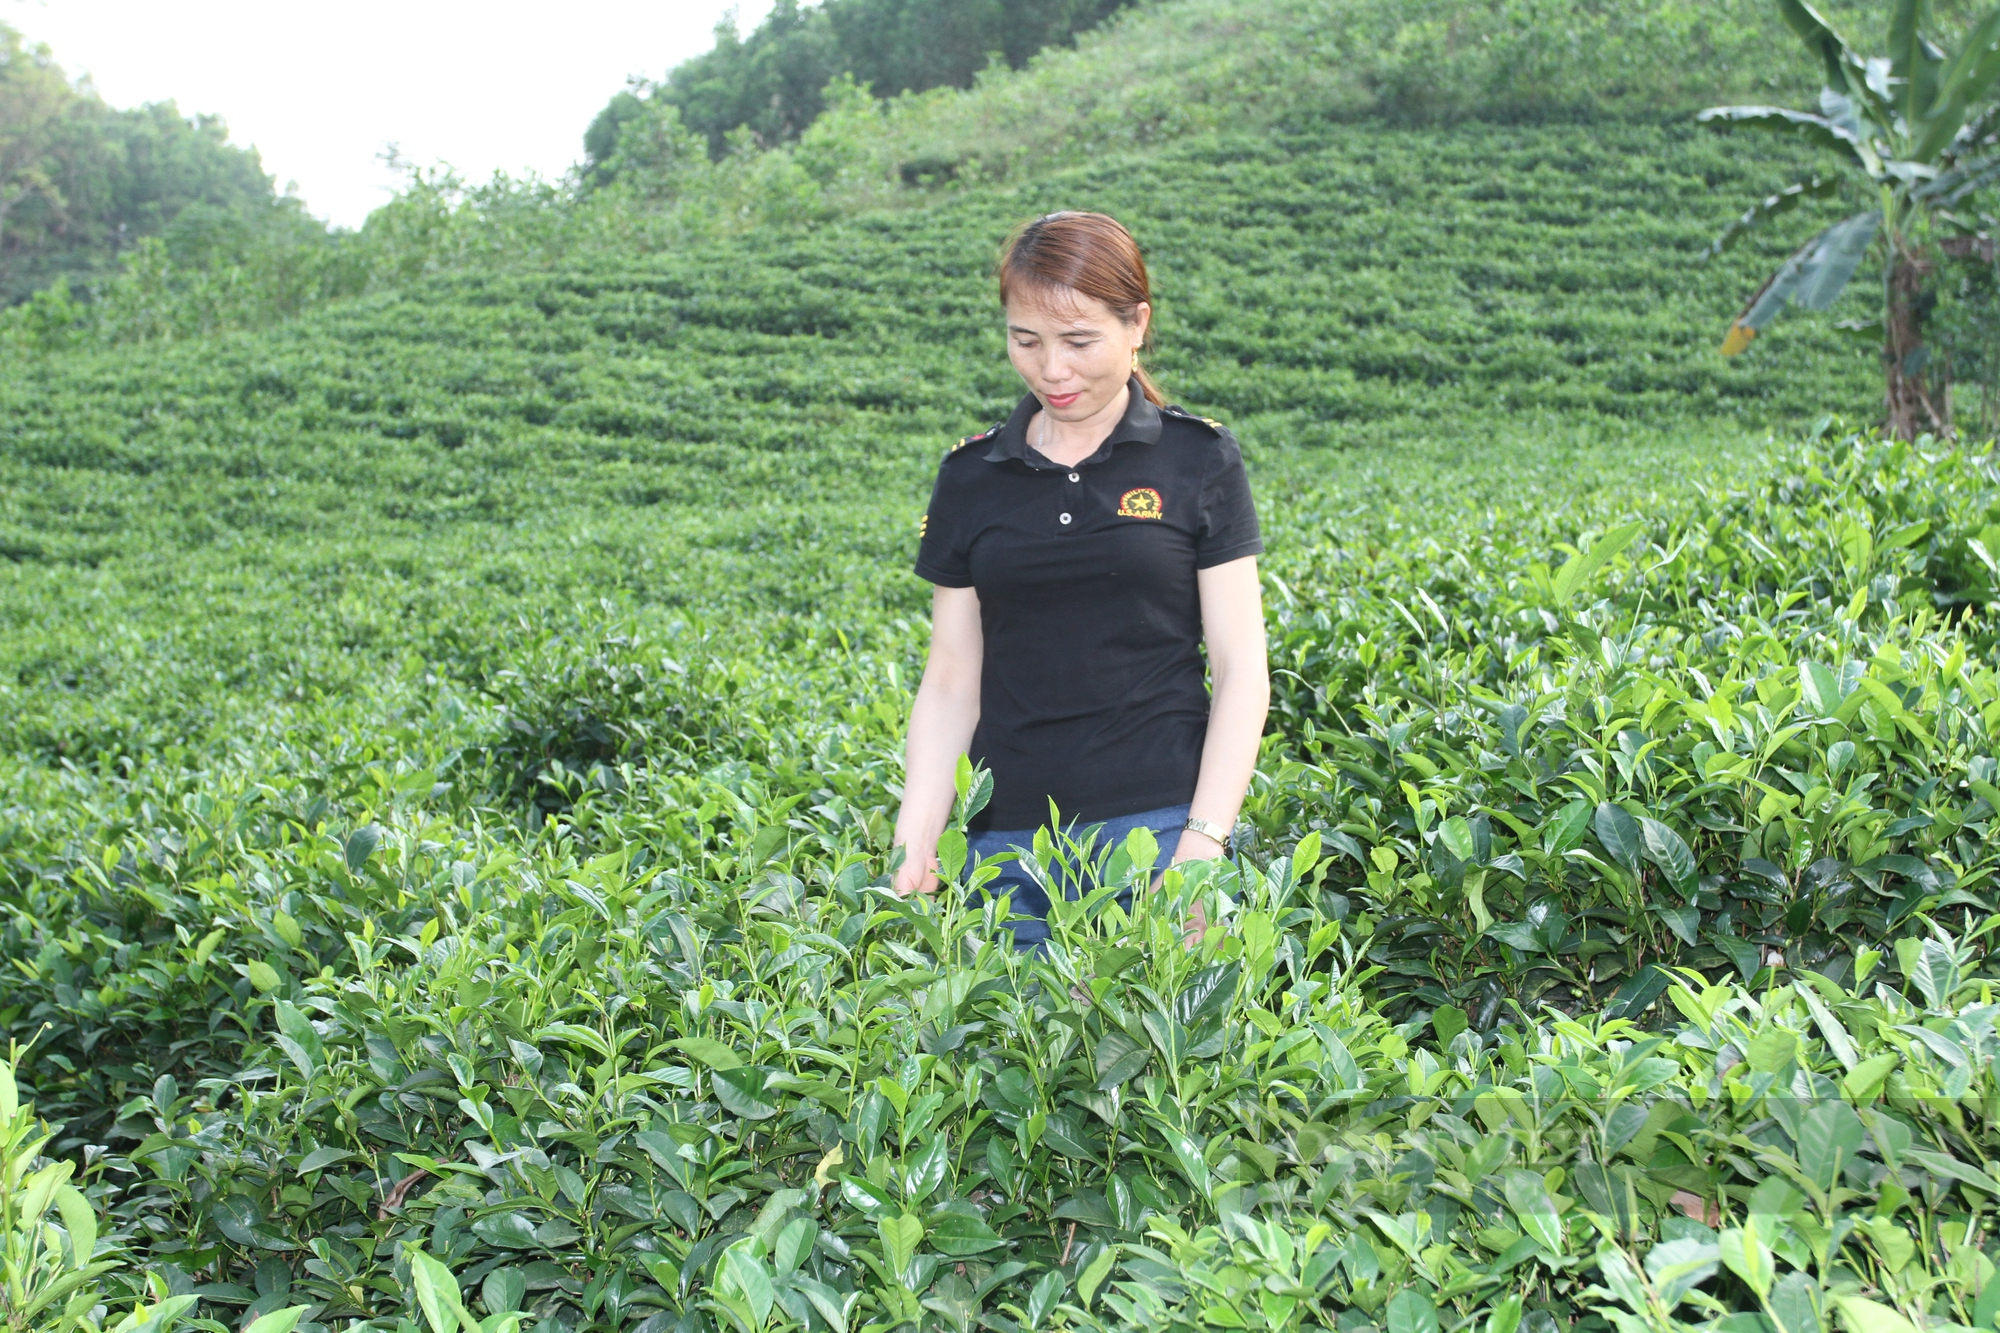 Chị nông dân Thái Nguyên làm ra loại chế phẩm sinh học phun cho cây chè, cây nào cũng xanh mướt, không lo sâu bệnh - Ảnh 2.